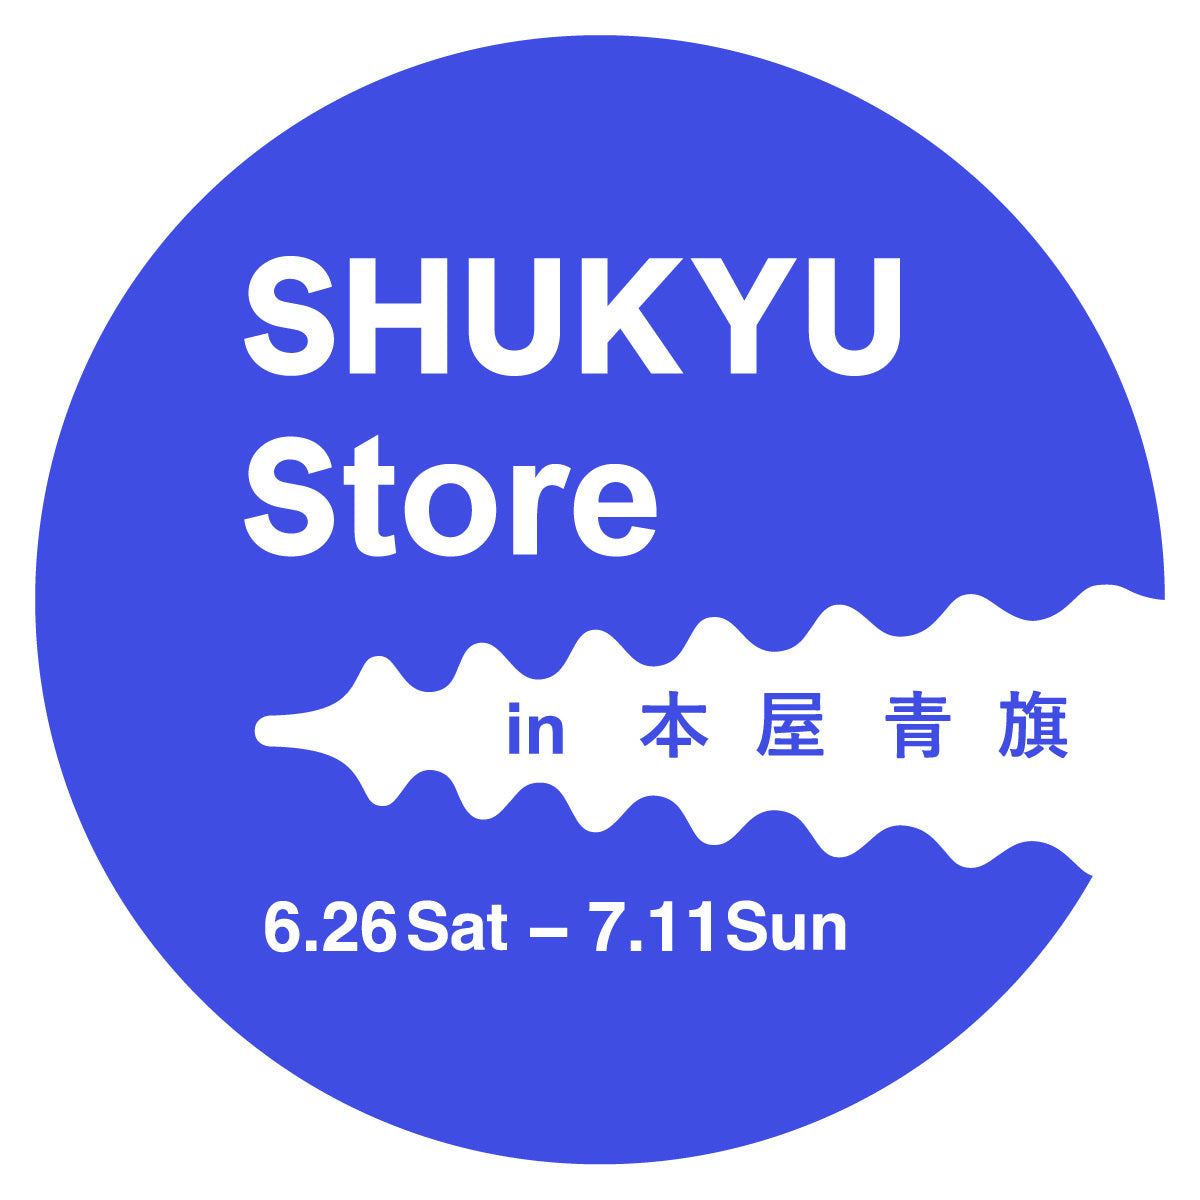 SHUKYU Store in 本屋青旗